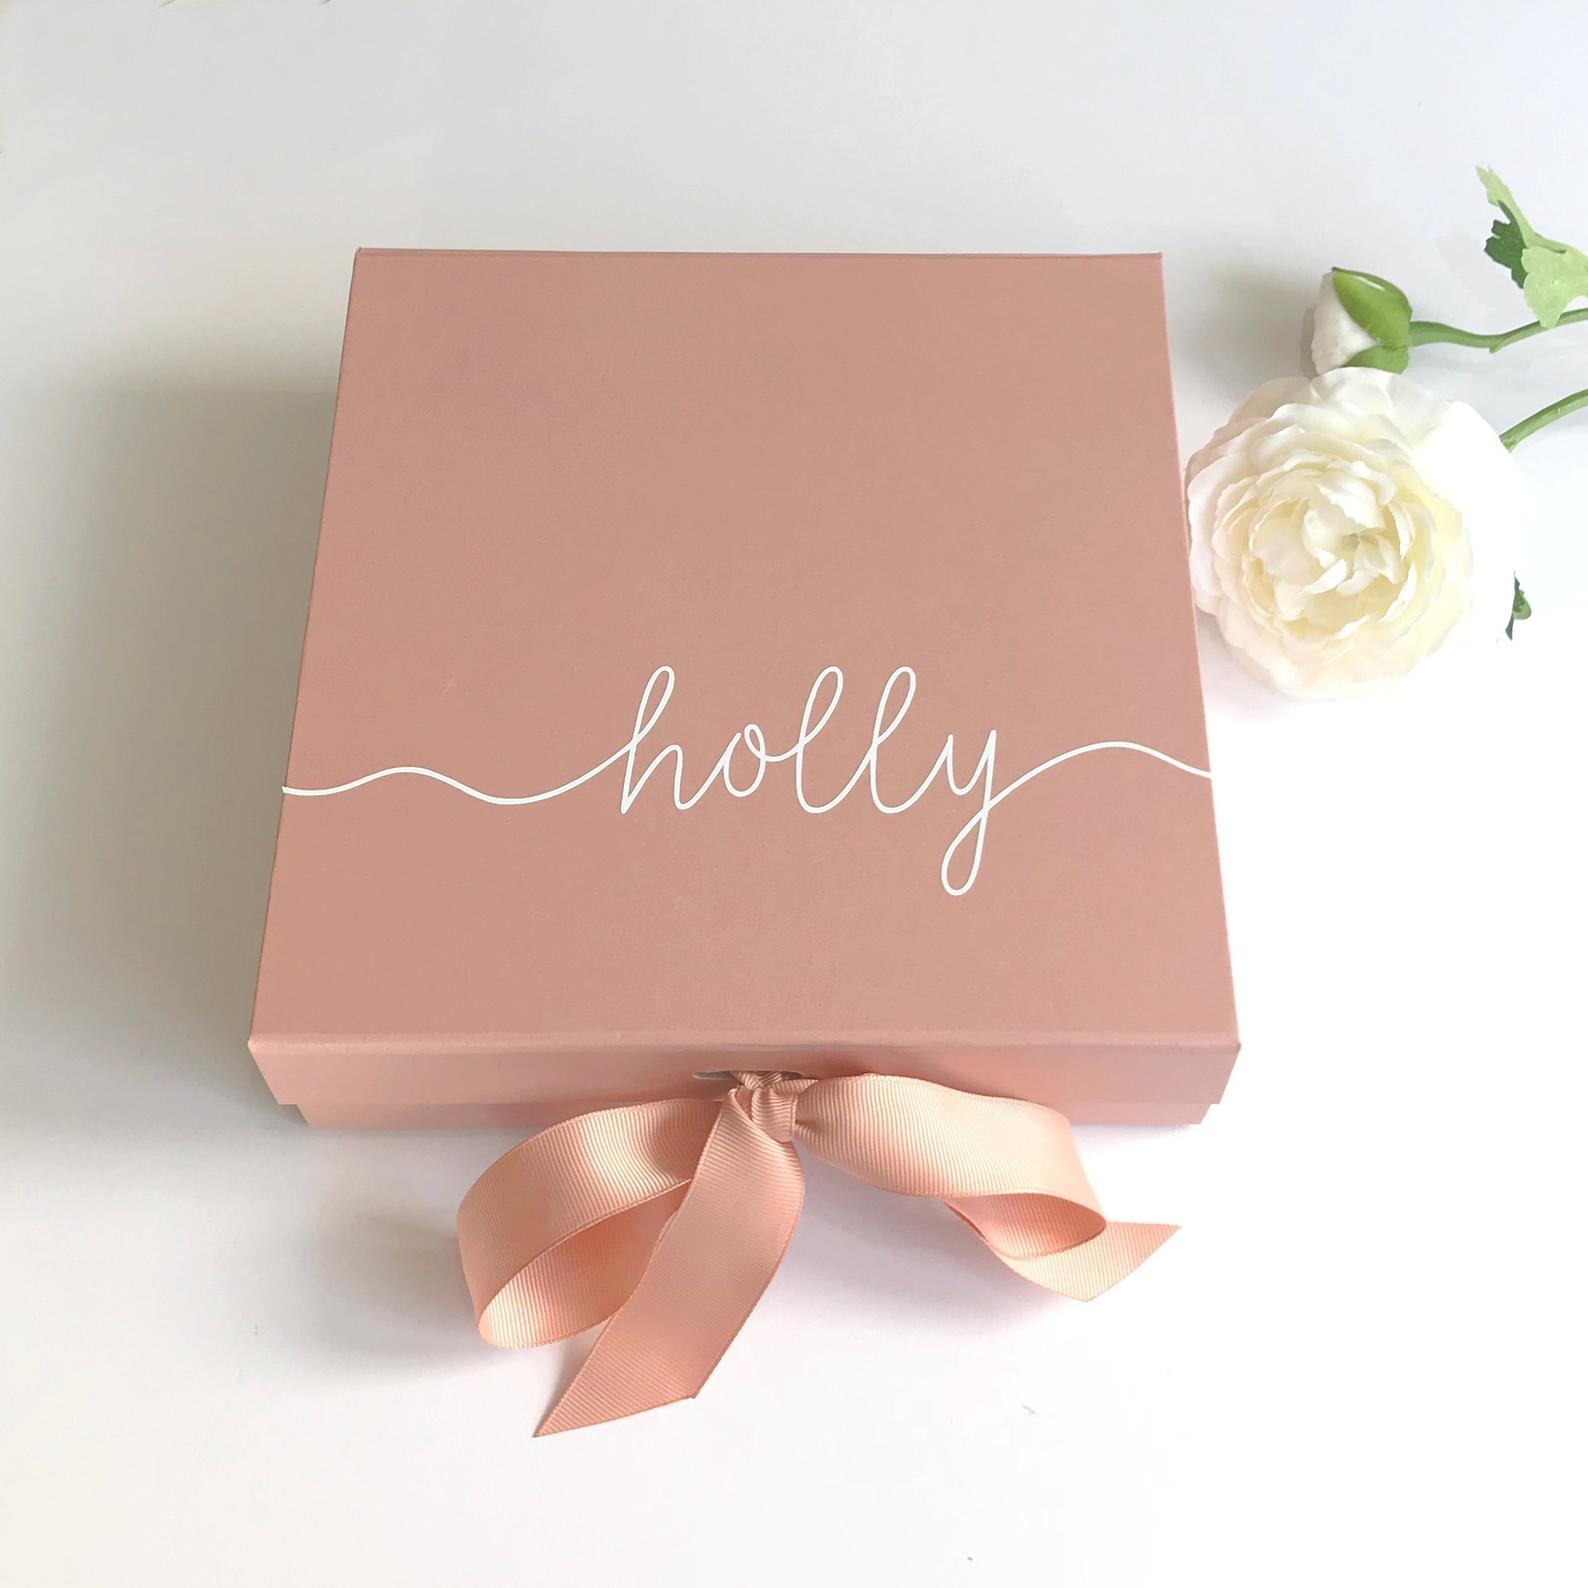 boîte personnalisée cadeaux pour demoiselle d'honneur NorabellaUK mariage emballage